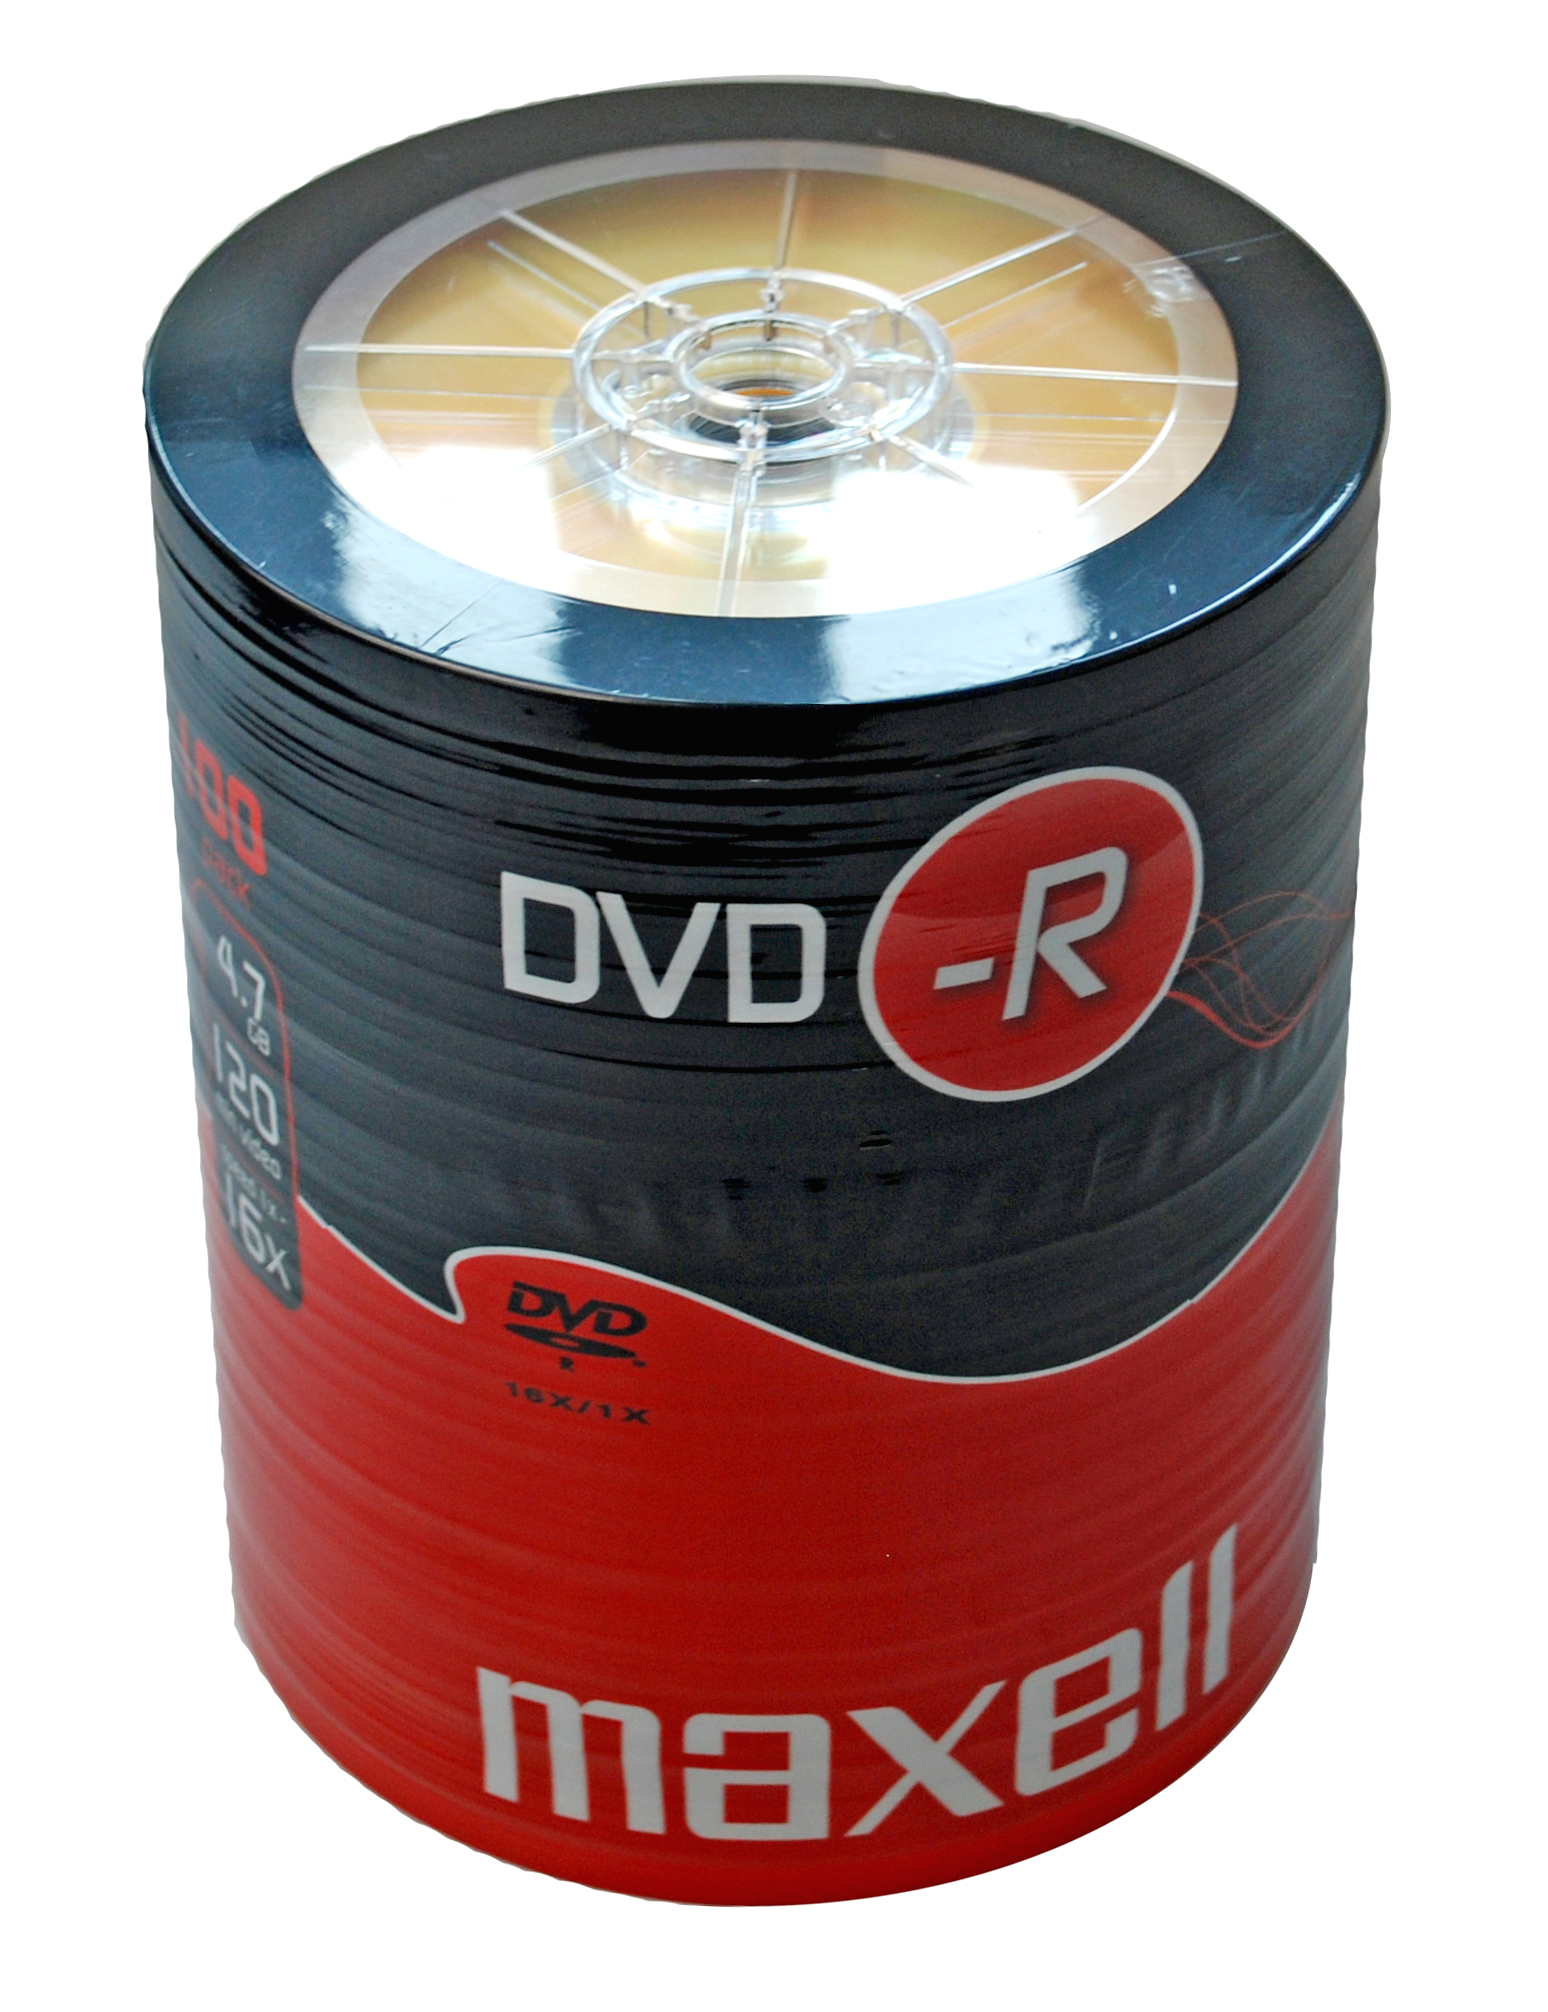 Dvd r 100. Maxell DVD-R. DVD-R. RW 100. DVD+R 4,7 GB 16x Bulk/100.